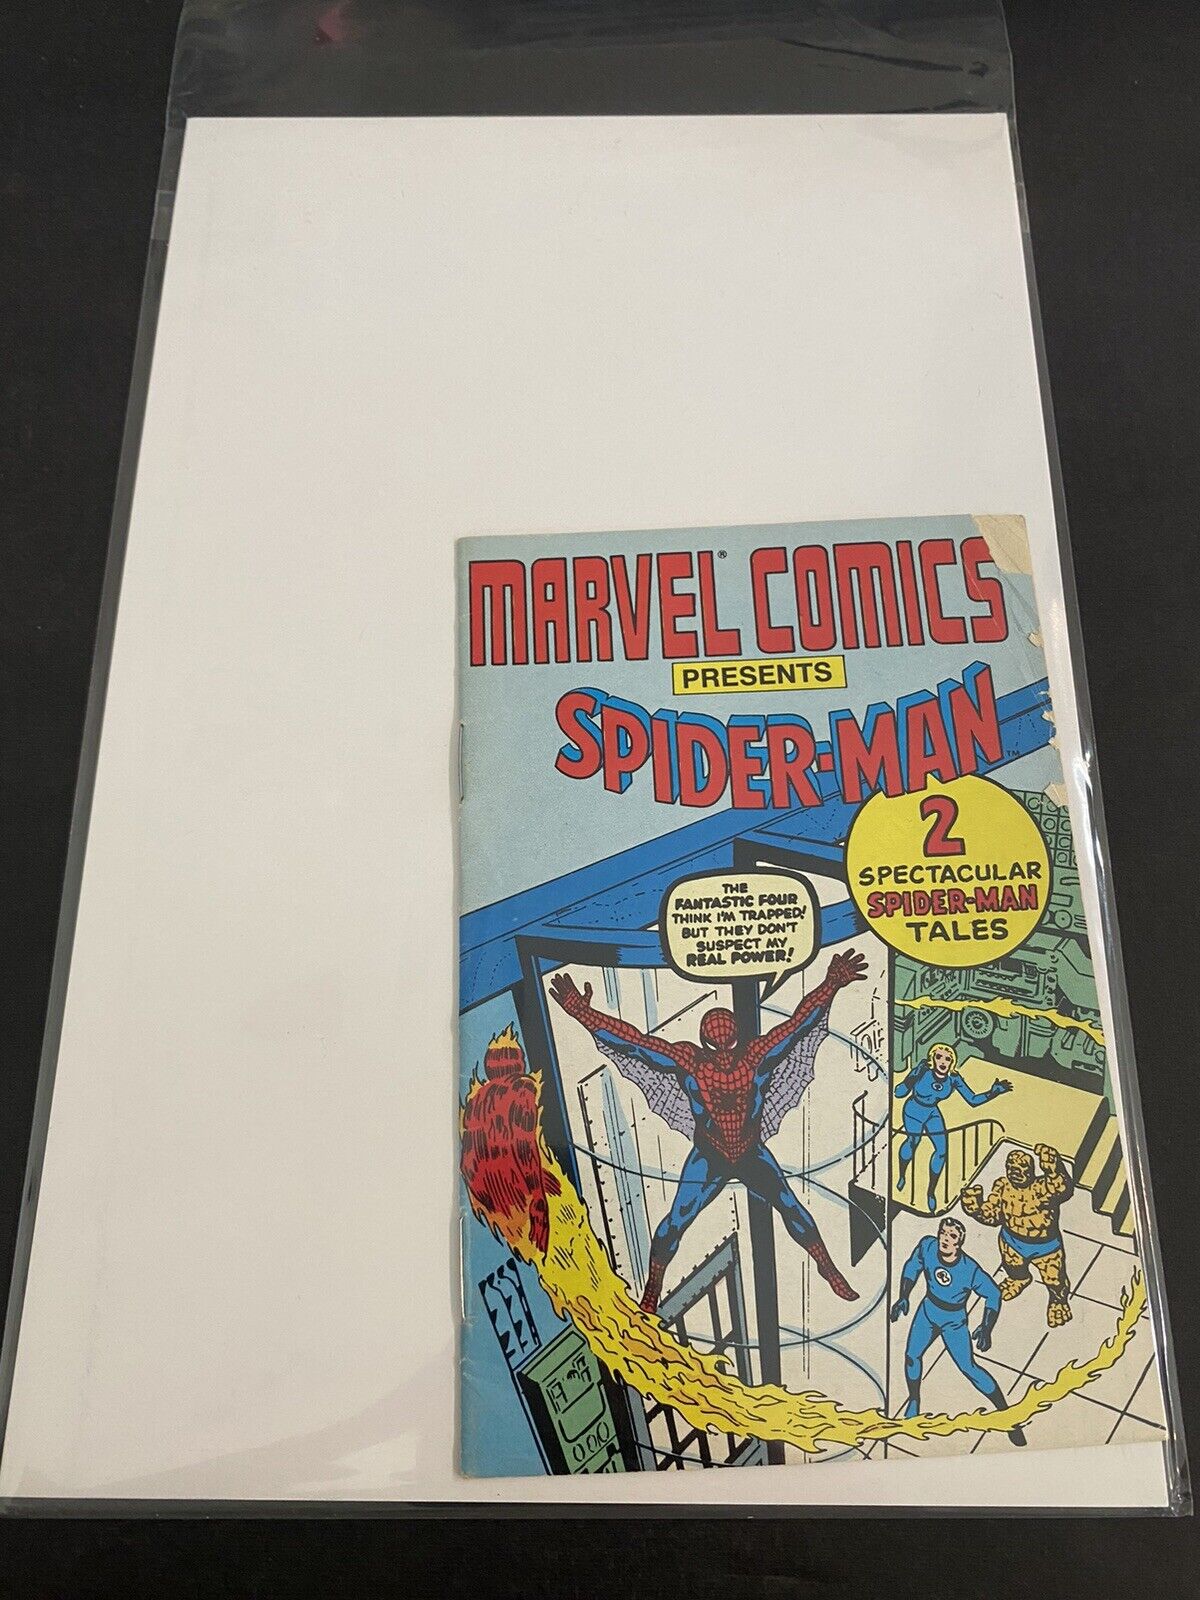 Marvel Comics Presents Spider-Man Mini/comic, Amazing Spider-Man 1 Reprint Cover